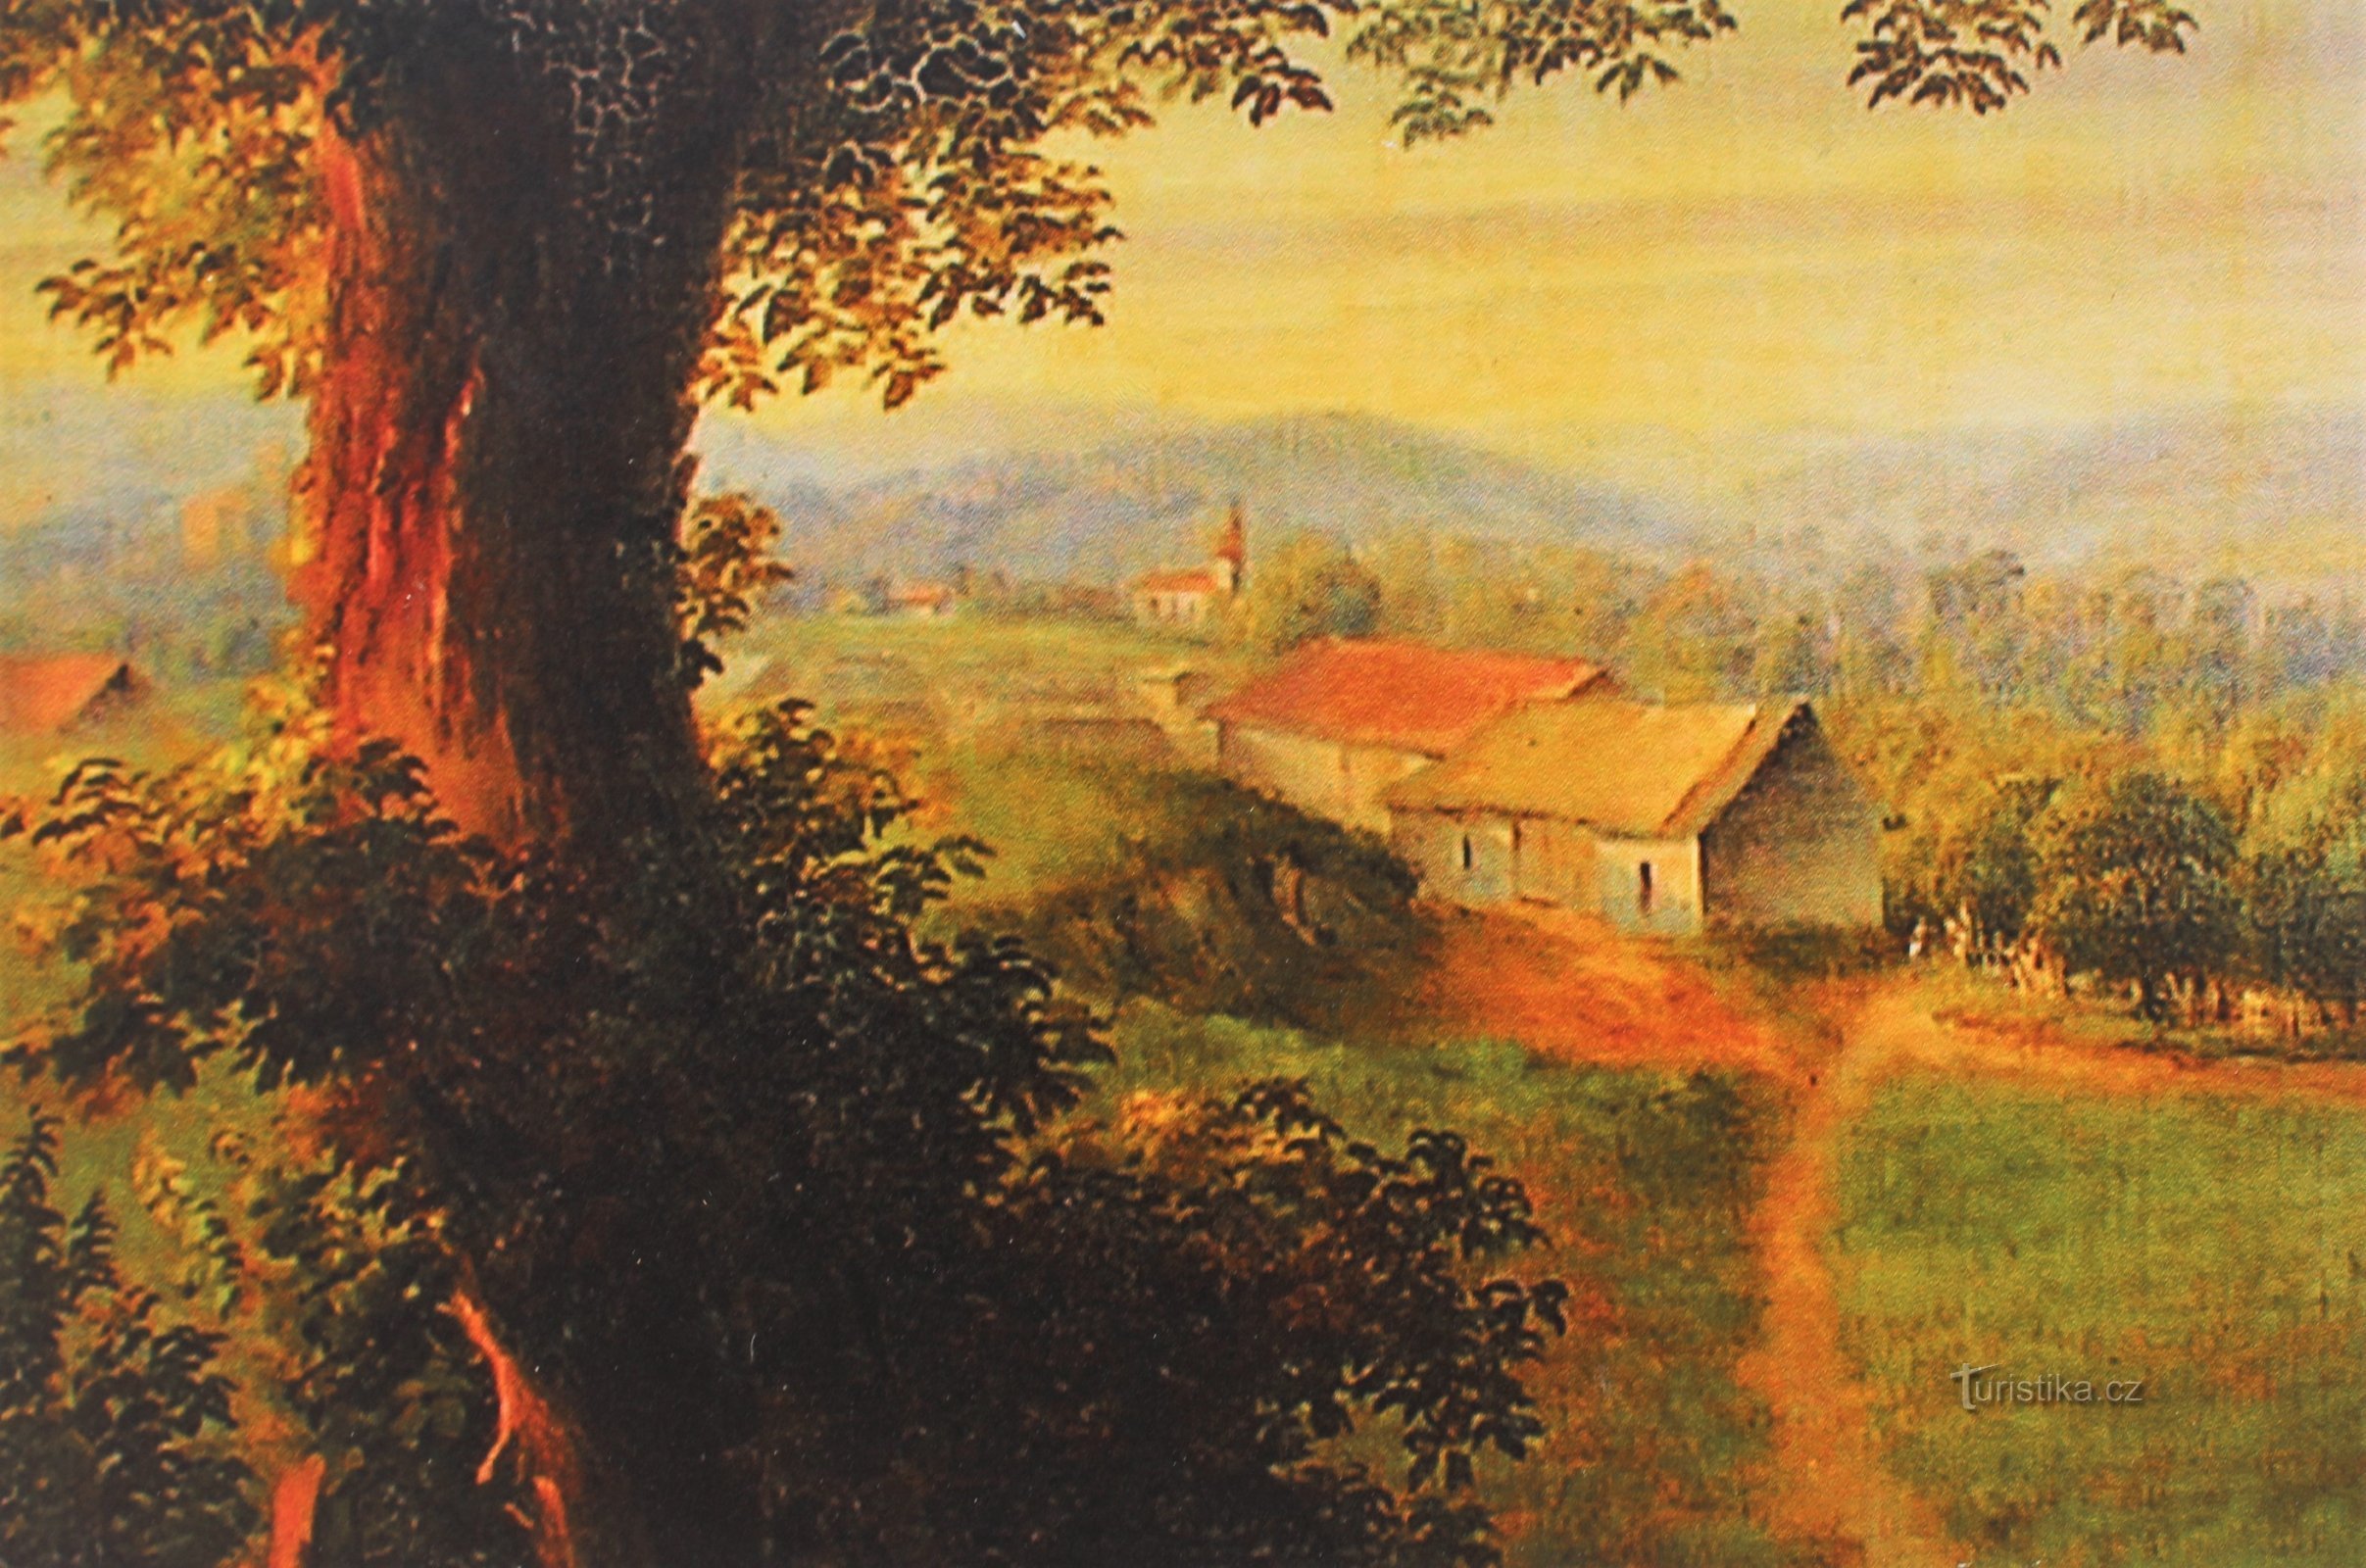 Celeiros de Čeladice e atrás deles as fundações de casas danificadas pela água, recortadas de uma pintura do século XVIII